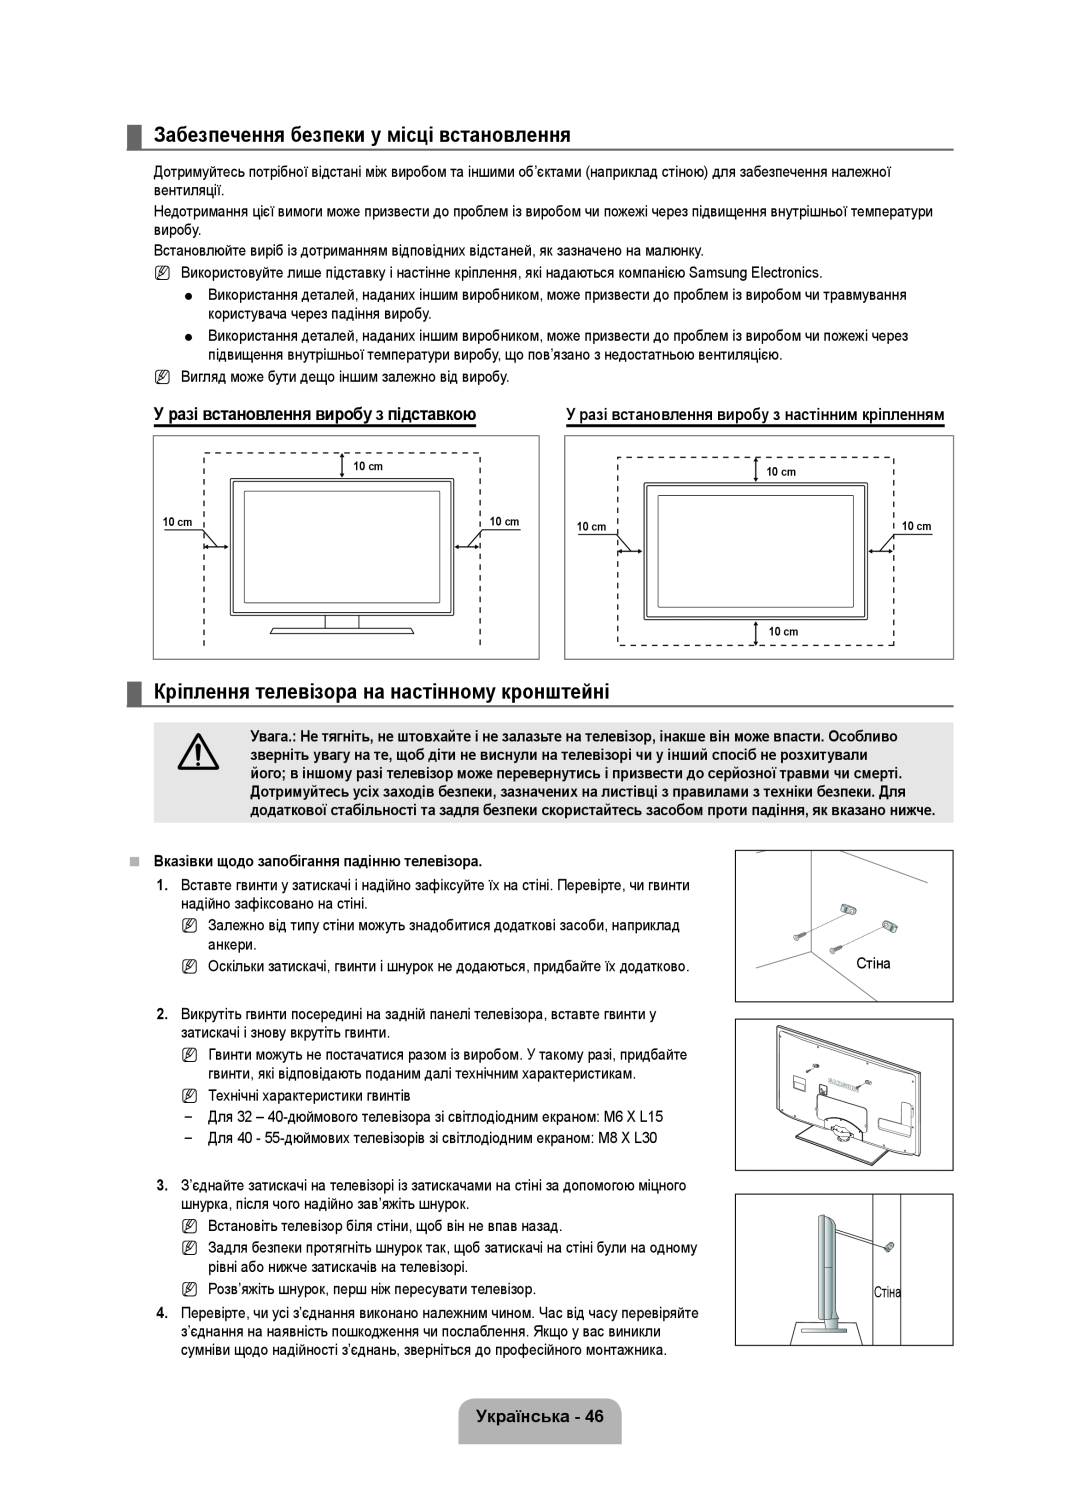 Samsung UE46B6000VWXXC manual Забезпечення безпеки у місці встановлення, Кріплення телевізора на настінному кронштейні 